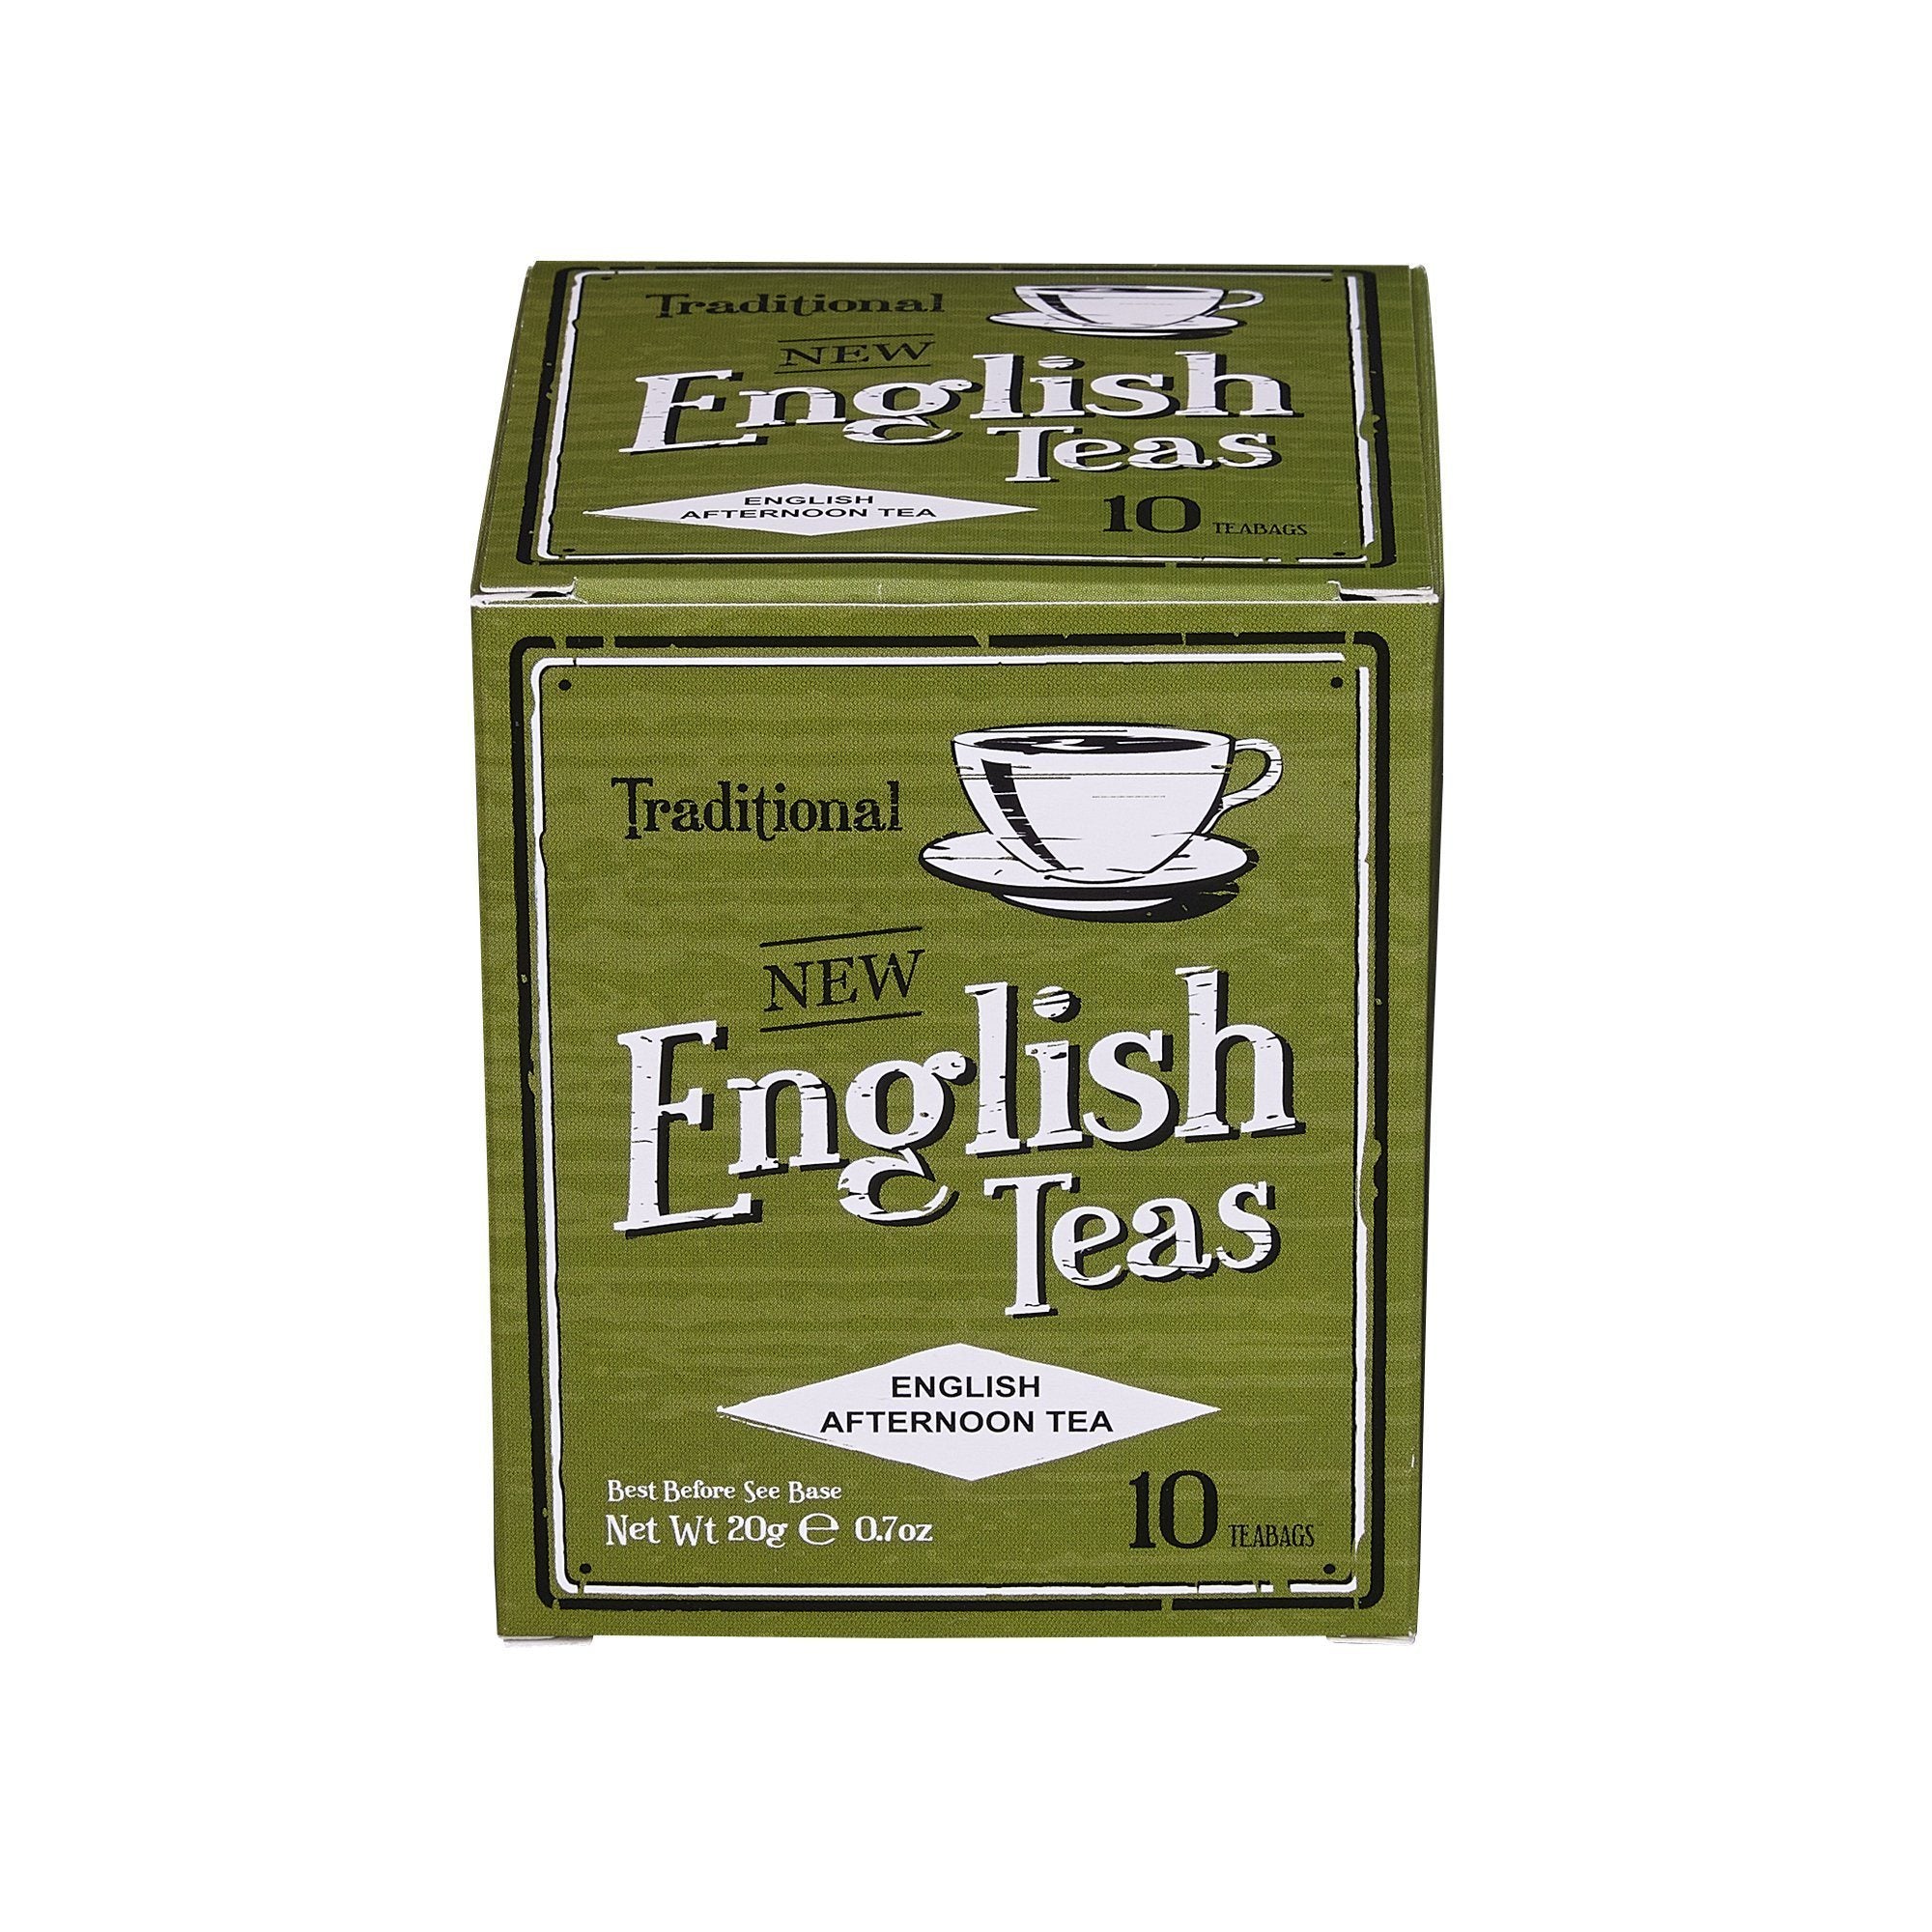 Vintage English Afternoon Tea 10 Teabag Carton Black Tea New English Teas 